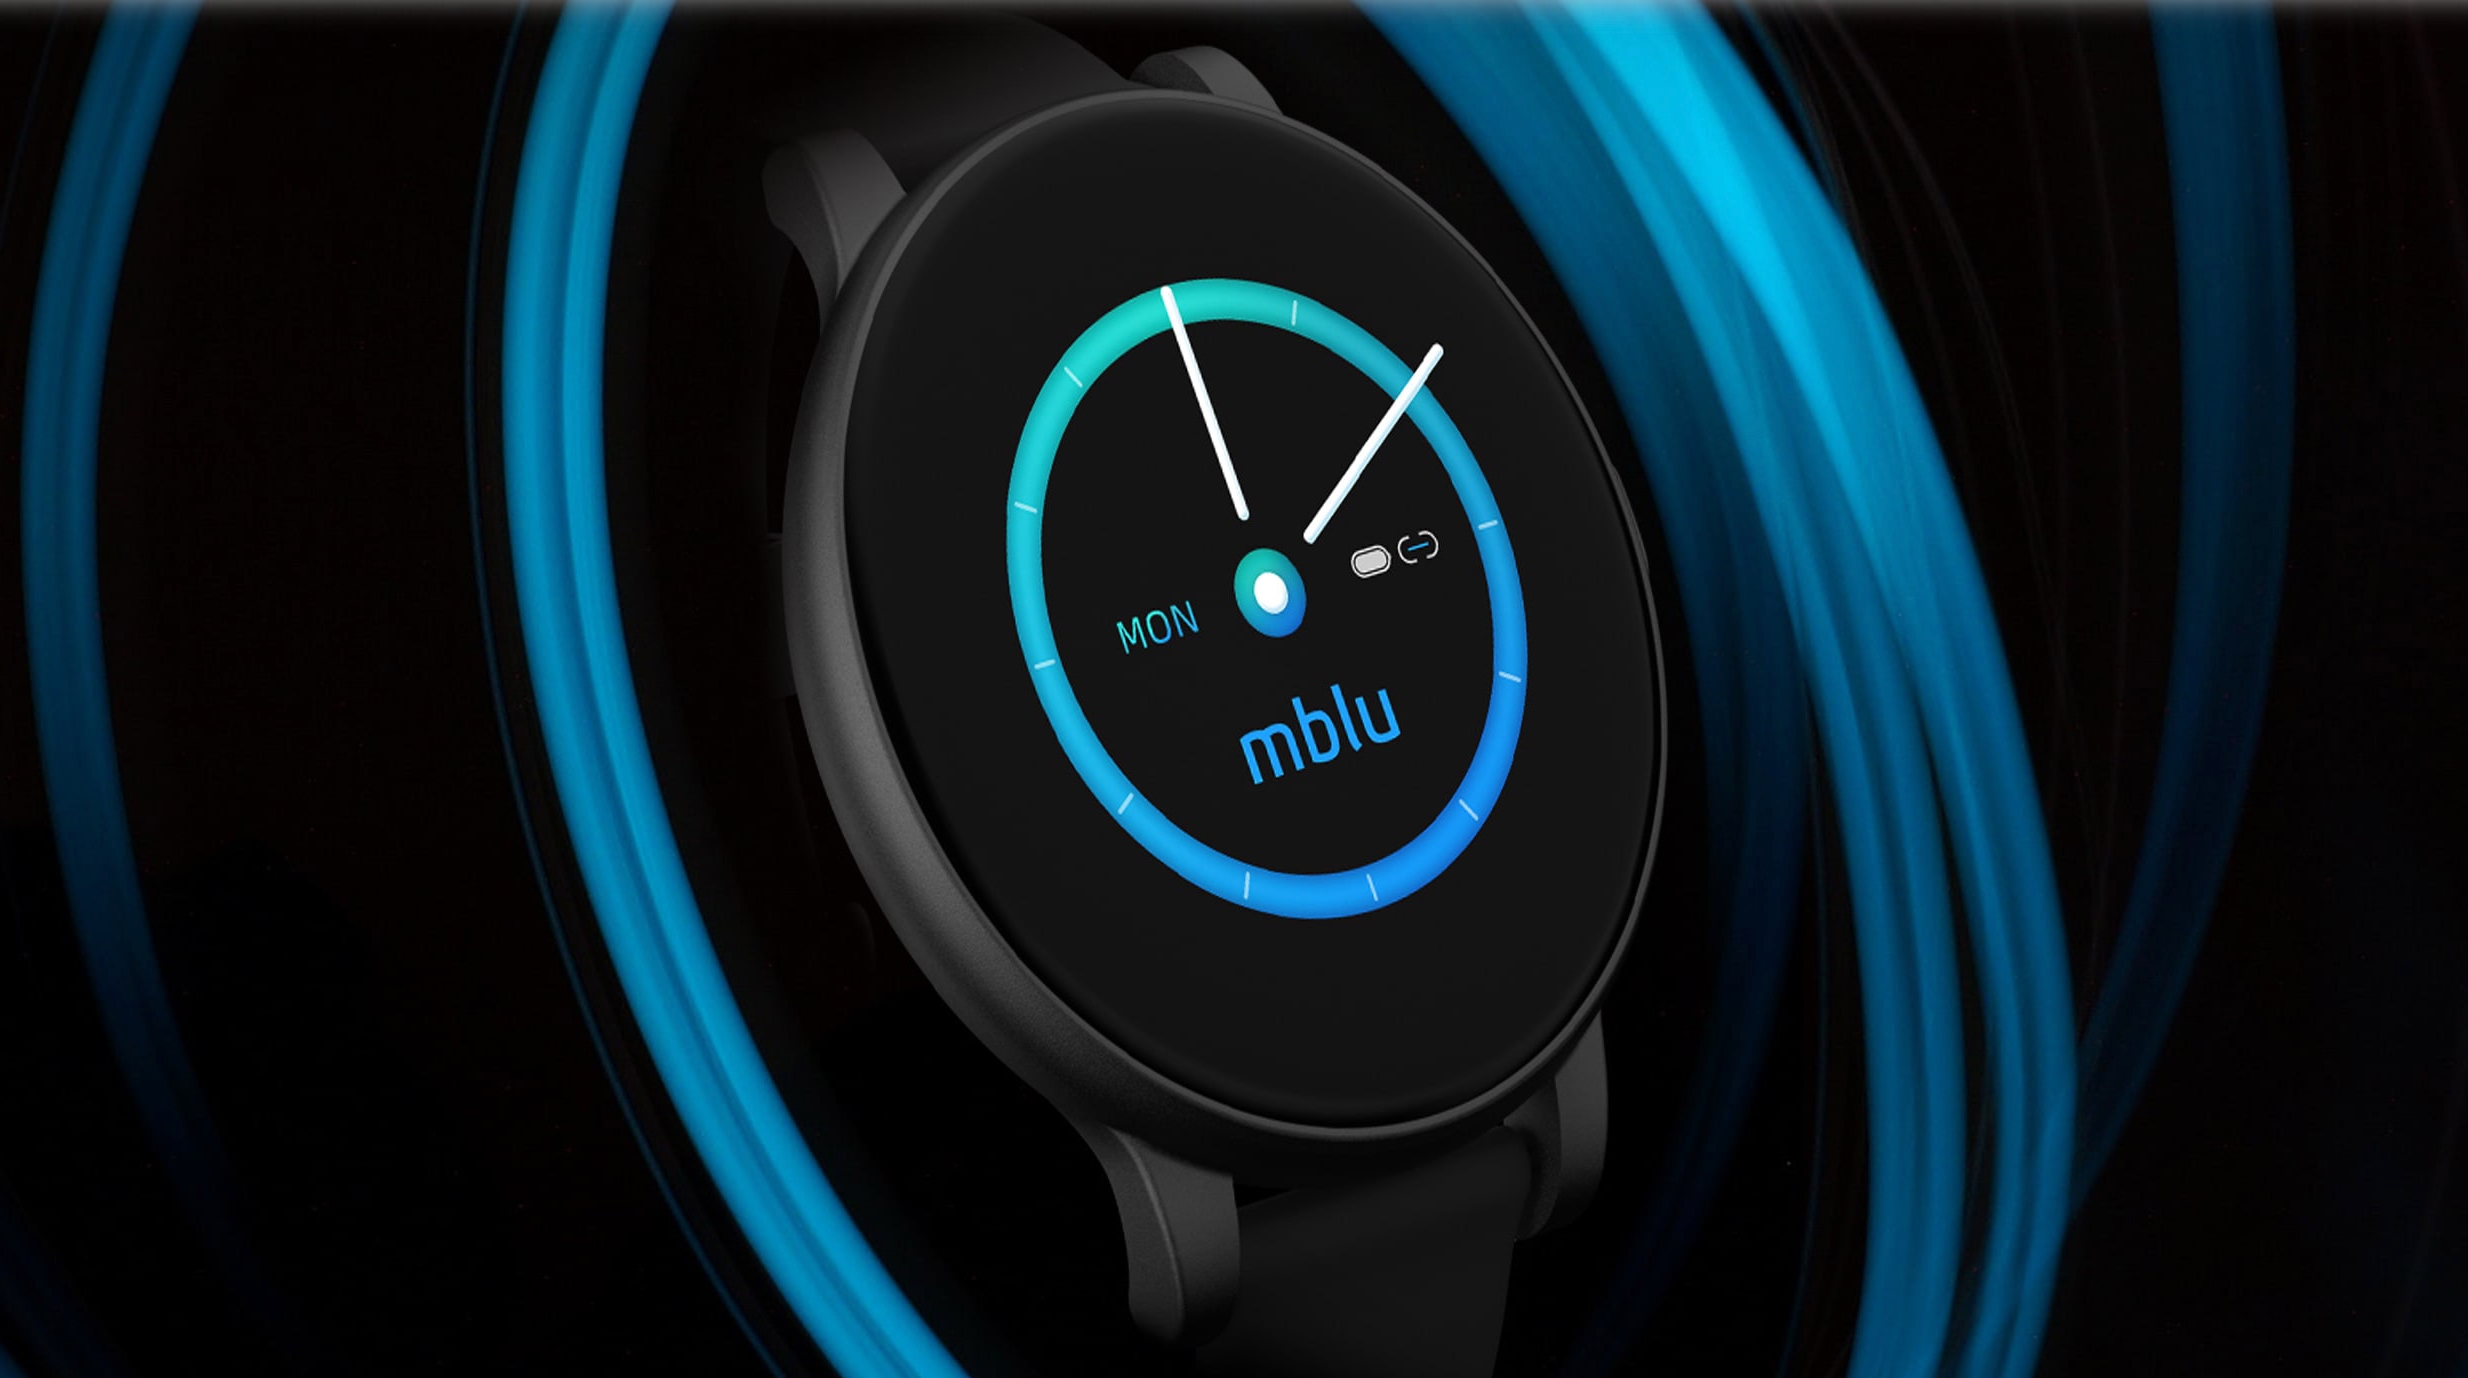 Meizu mBlu Smart Band: Fitness-Tracker mit rundem Bildschirm, IP68-Schutz und bis zu 10 Tagen Akkulaufzeit für $39